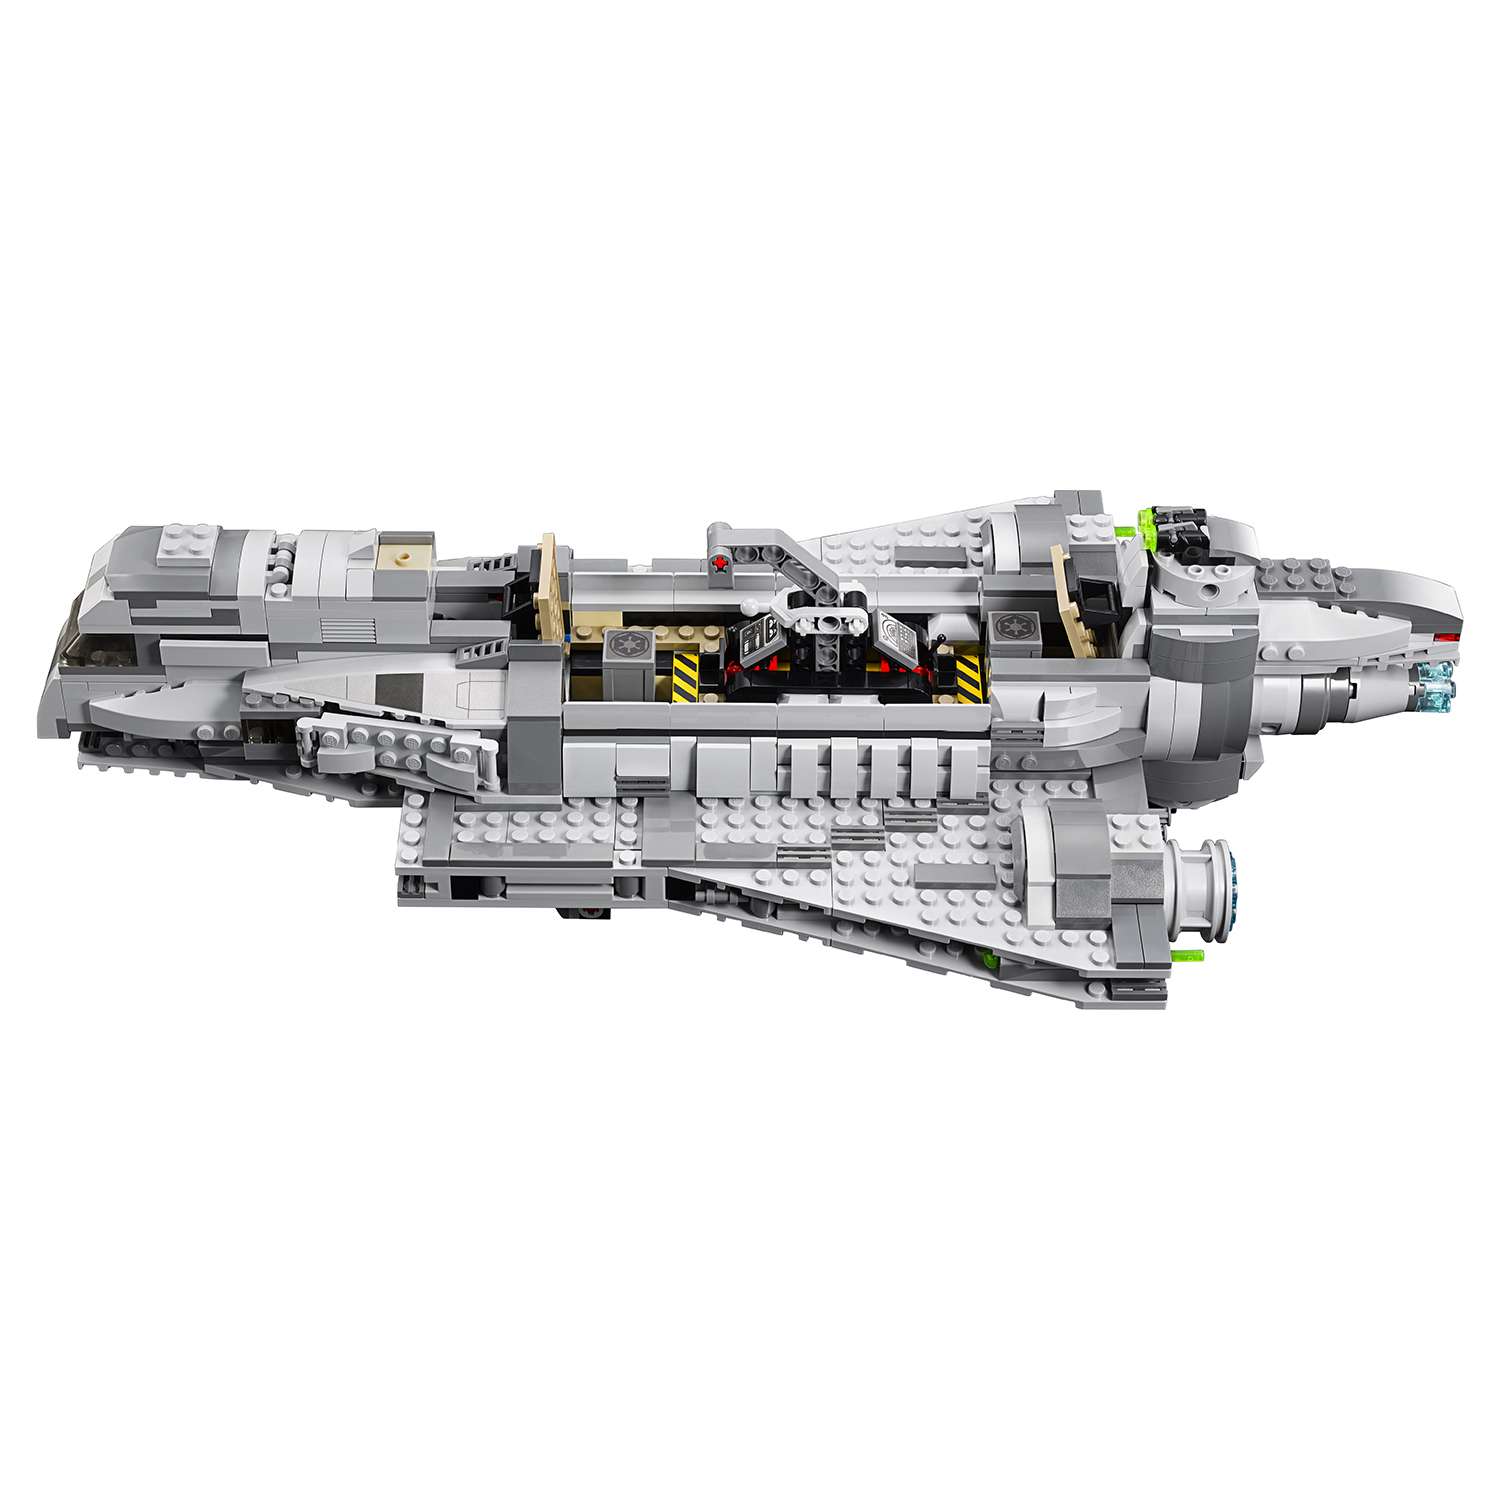 Конструктор LEGO Star Wars TM Имперский десантный корабль™ (Imperial Assault Carrier™) (75106) - фото 12